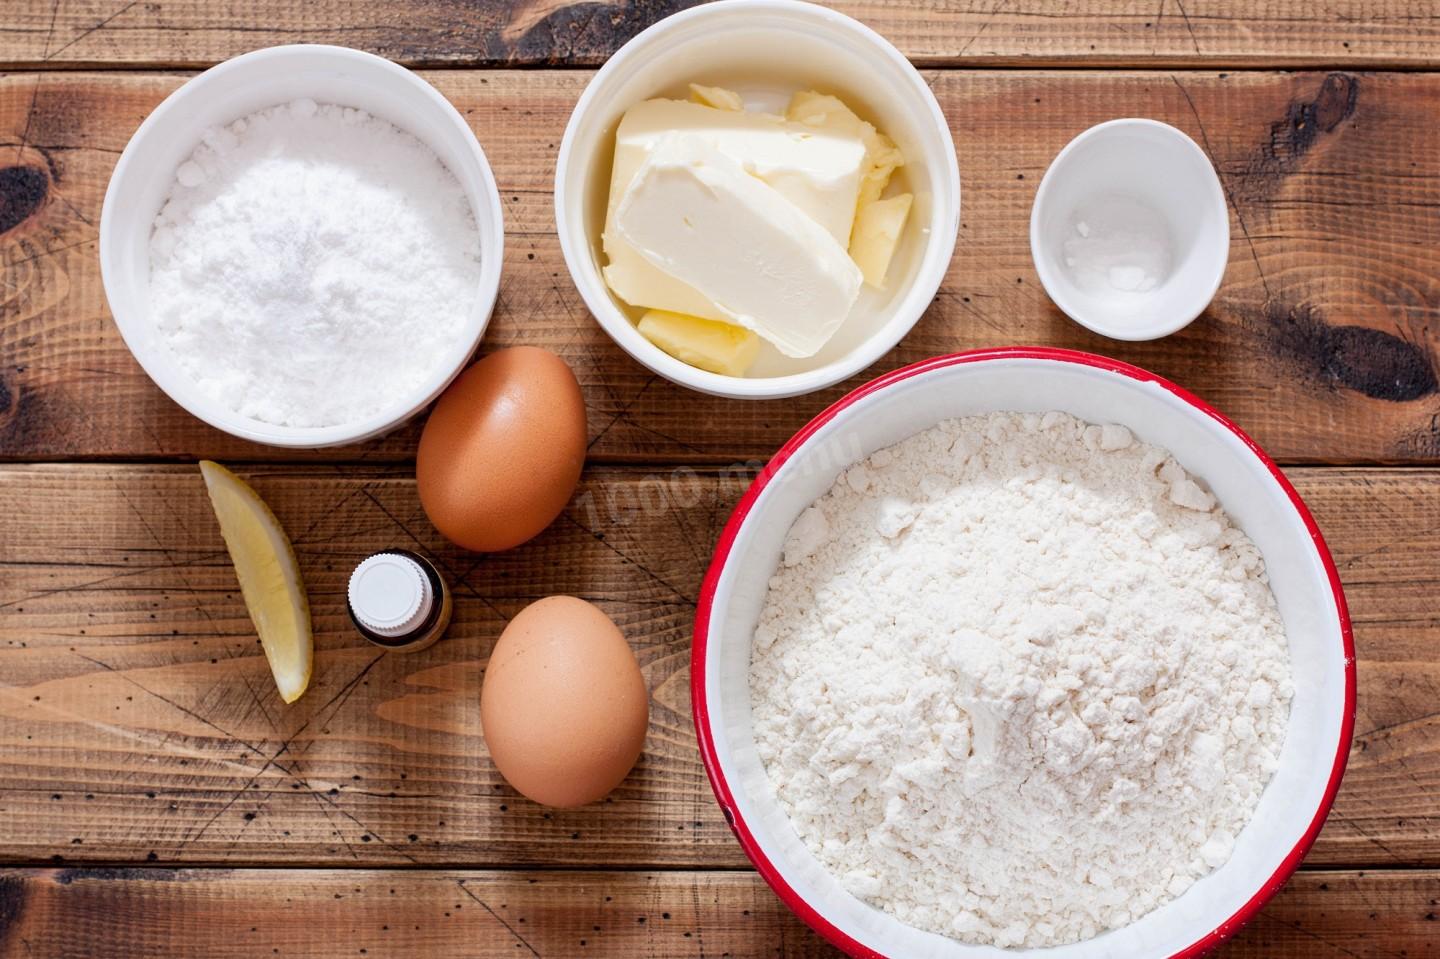 Кефир 1 яйцо мука сахар. Подготовка ингредиентов. Мука сода яйца и сахар. Яйца мука сахар сода готовить пирог. Съедобная свеча из сливочного масла.